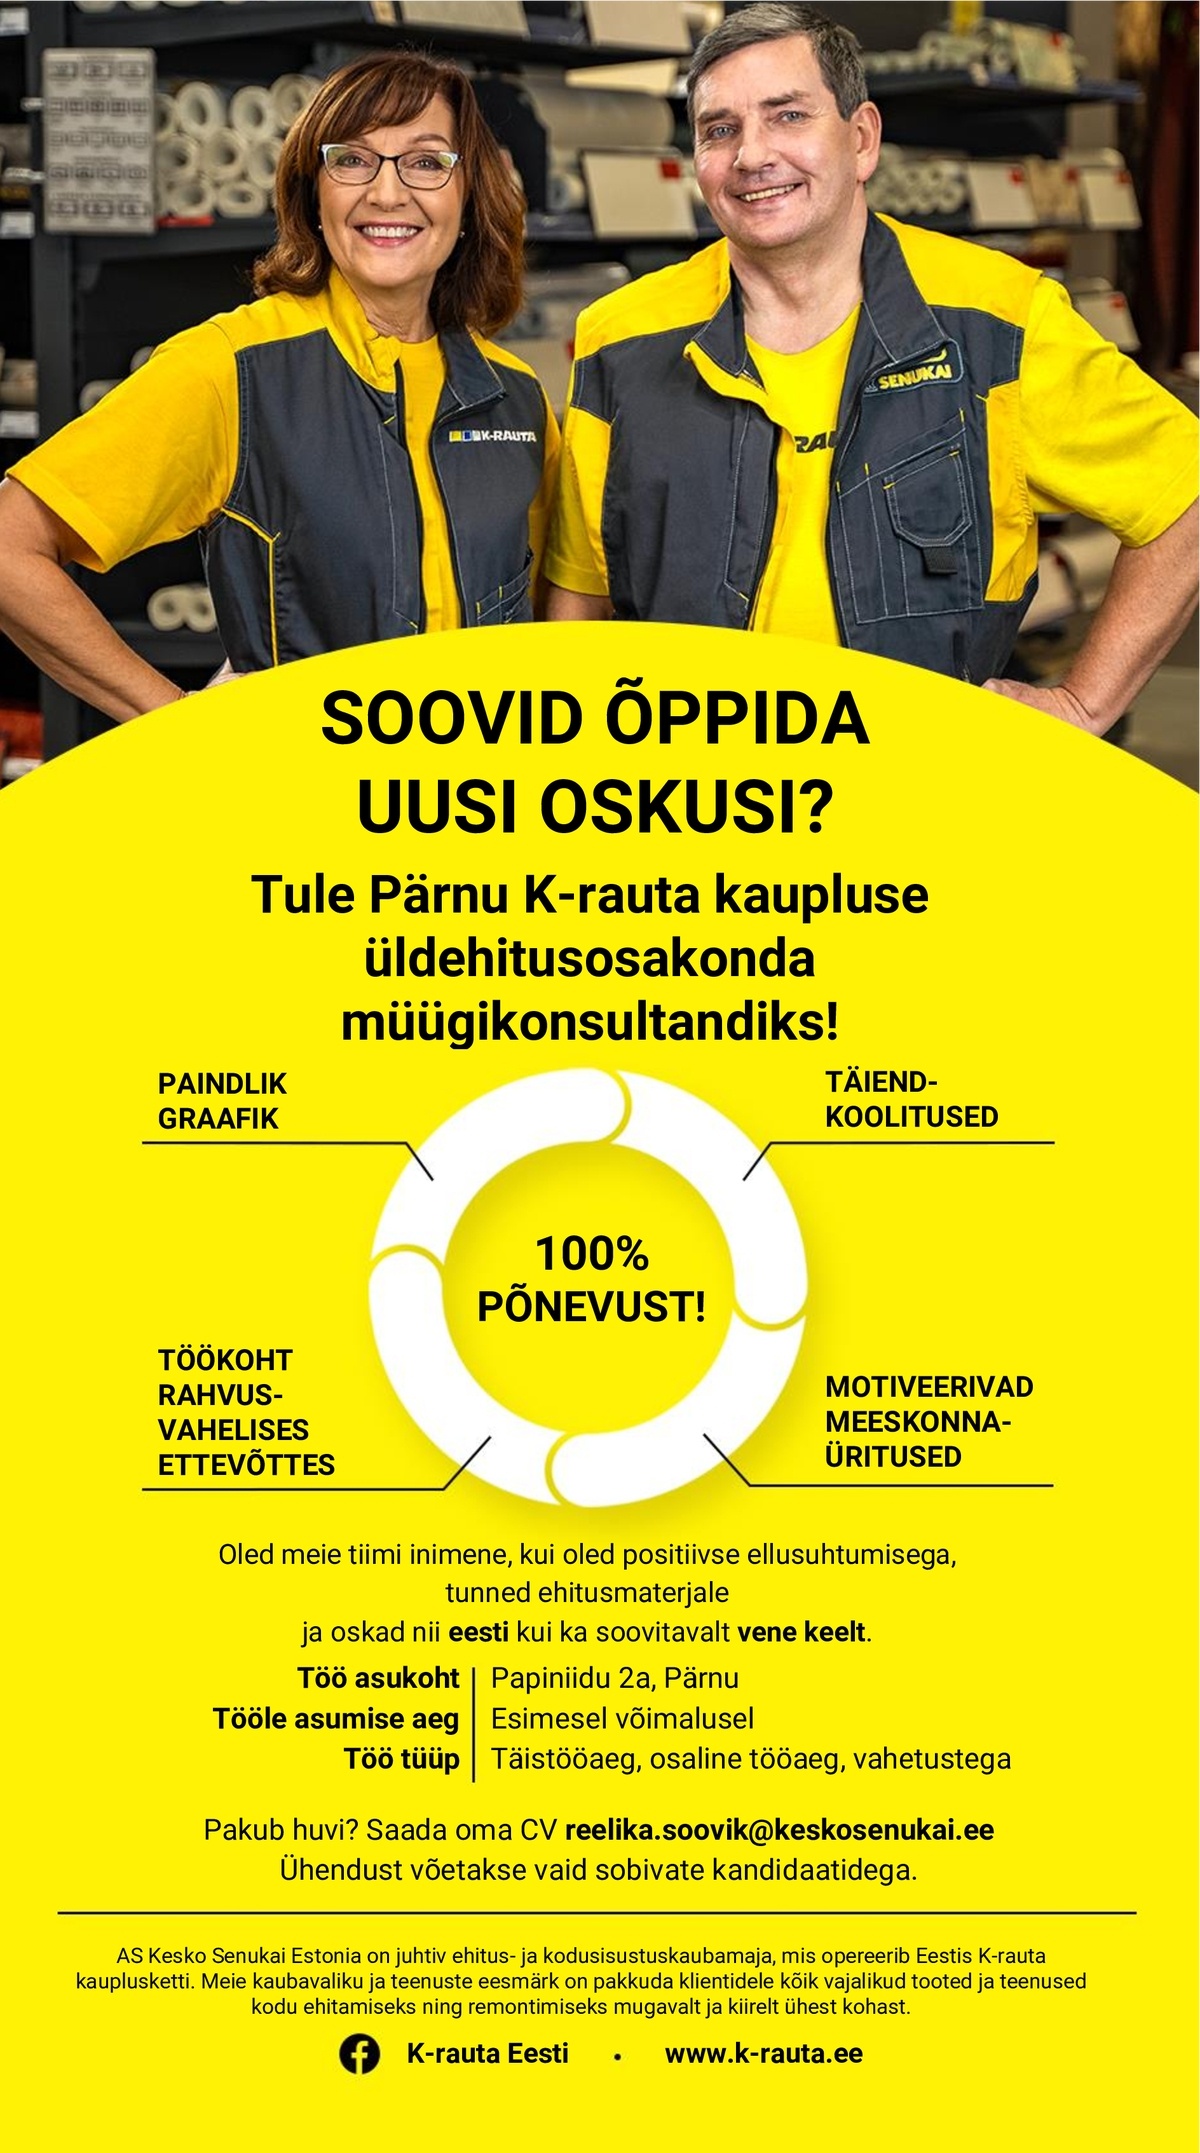 AS Kesko Senukai Estonia Müügikonsultant üldehitusosakonda Pärnu K-rauta kauplusesse